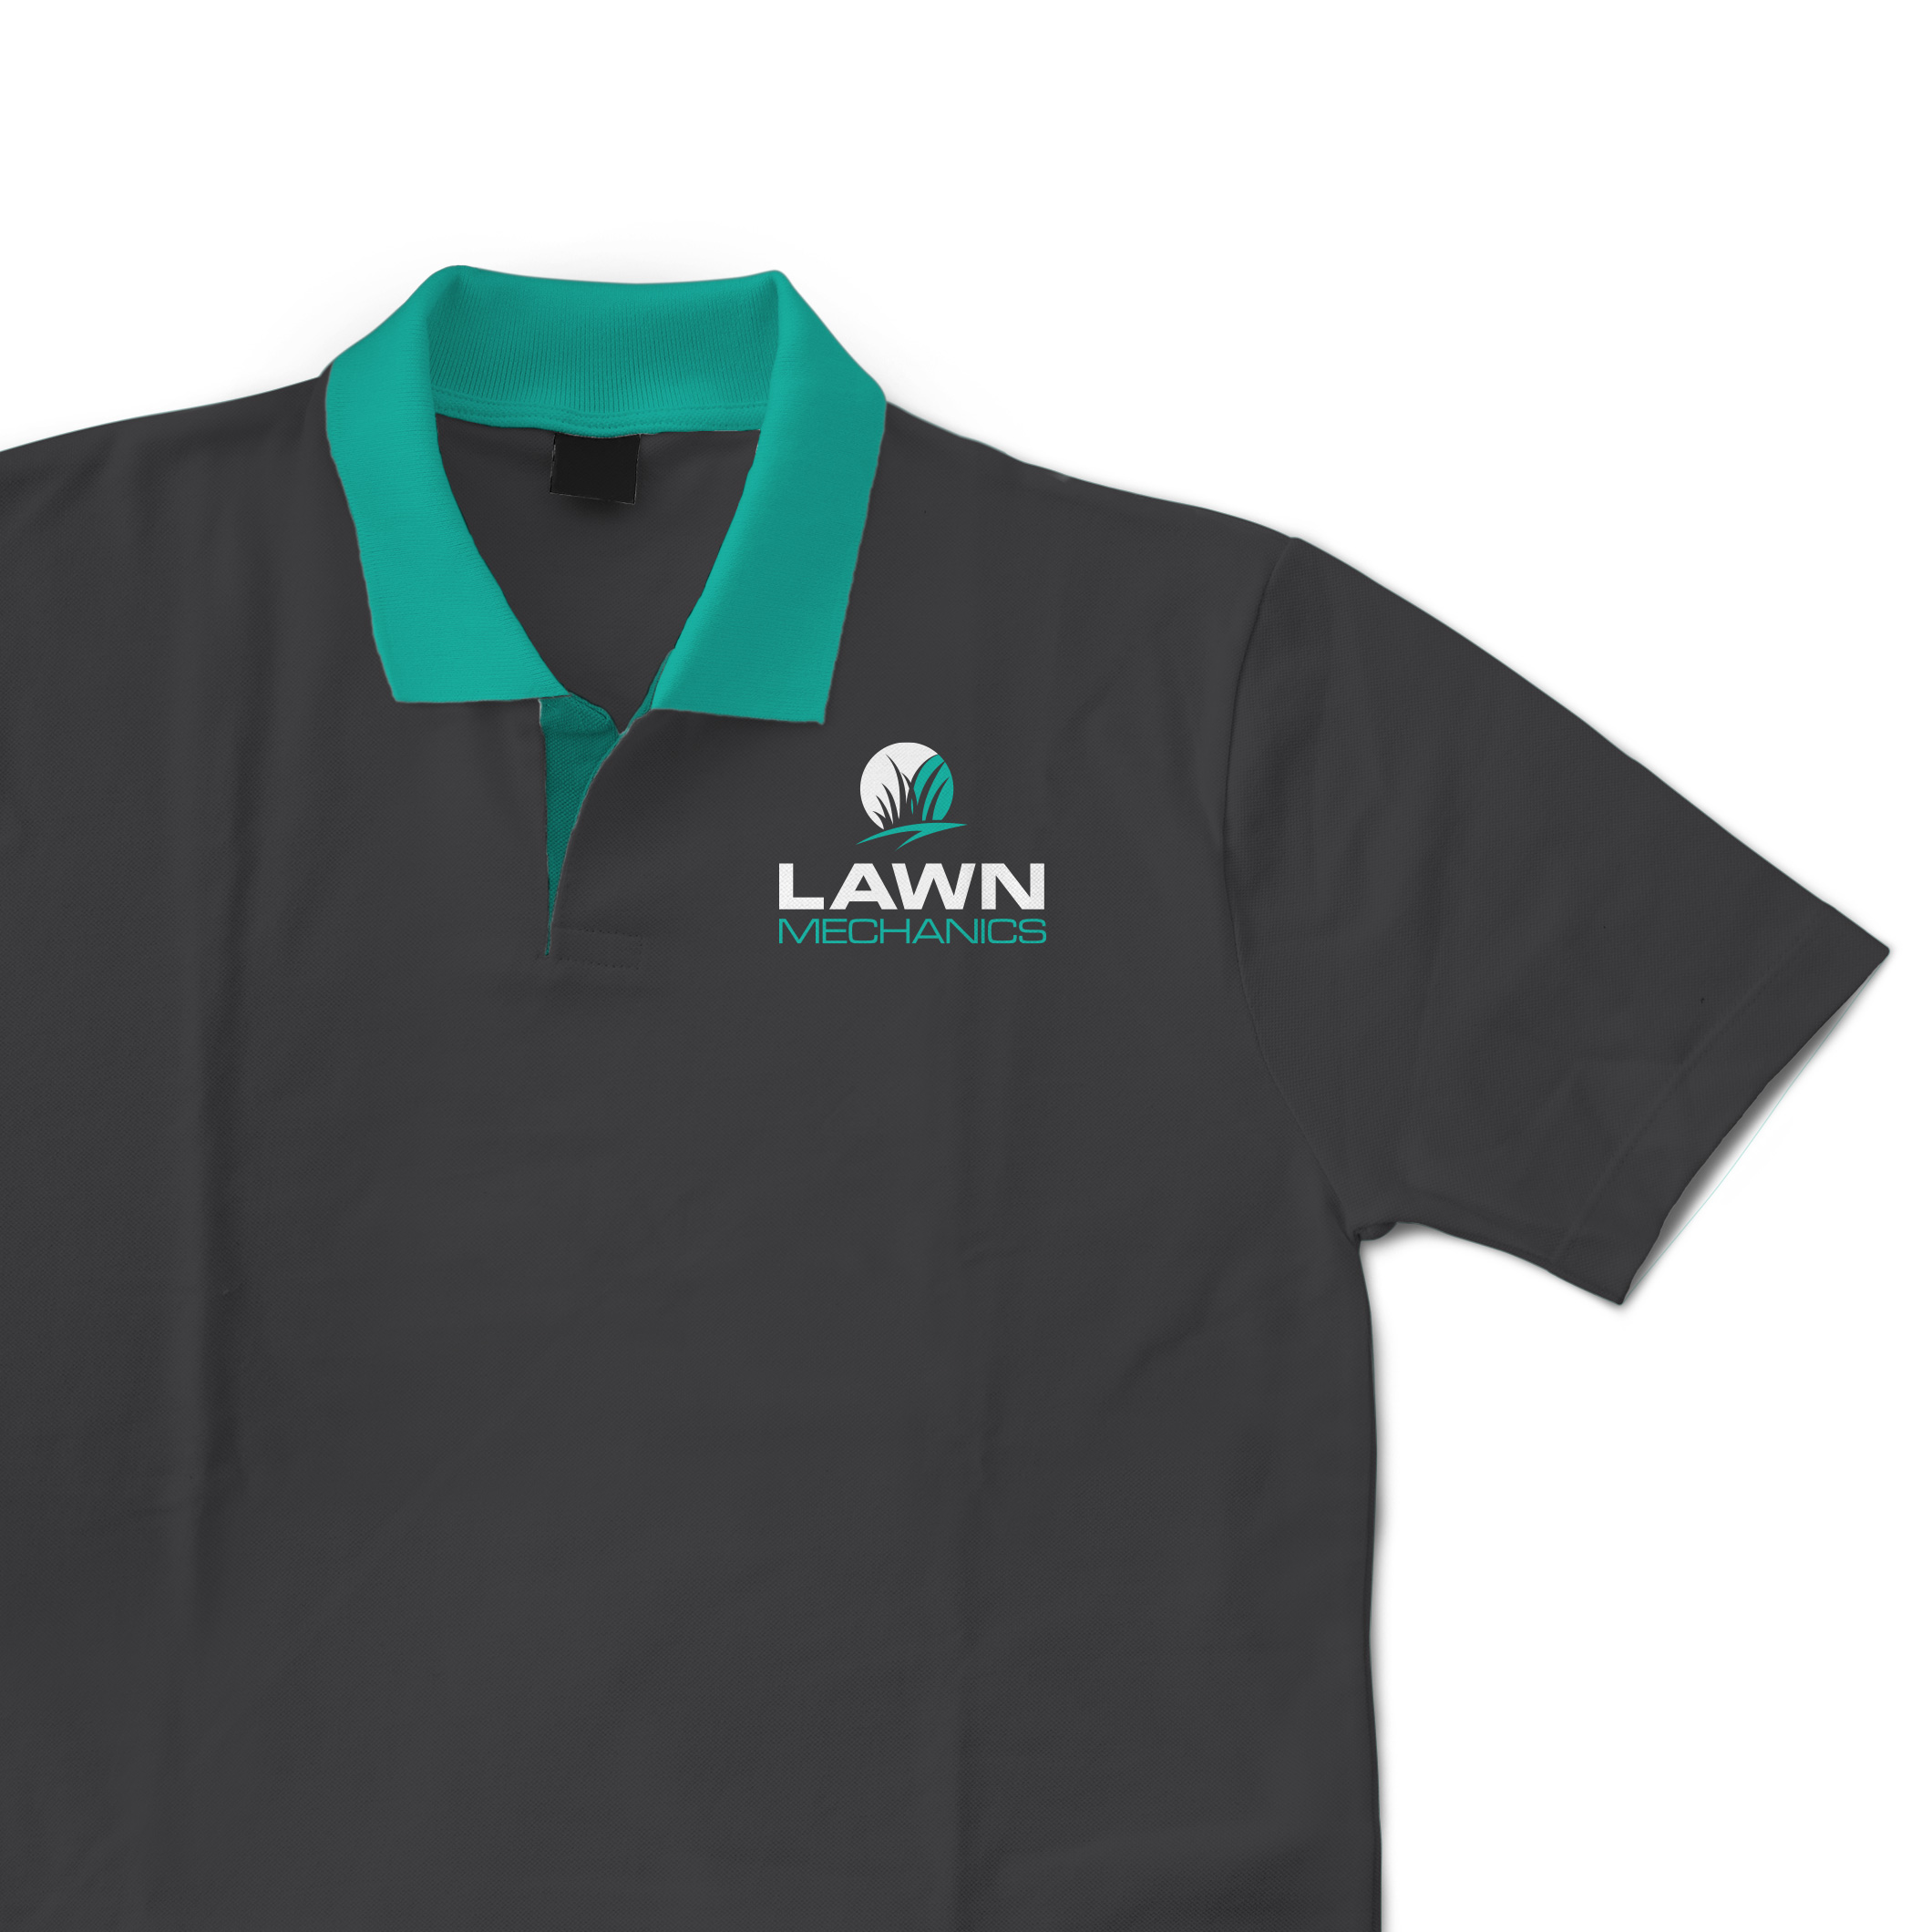 brand board for lawn care company